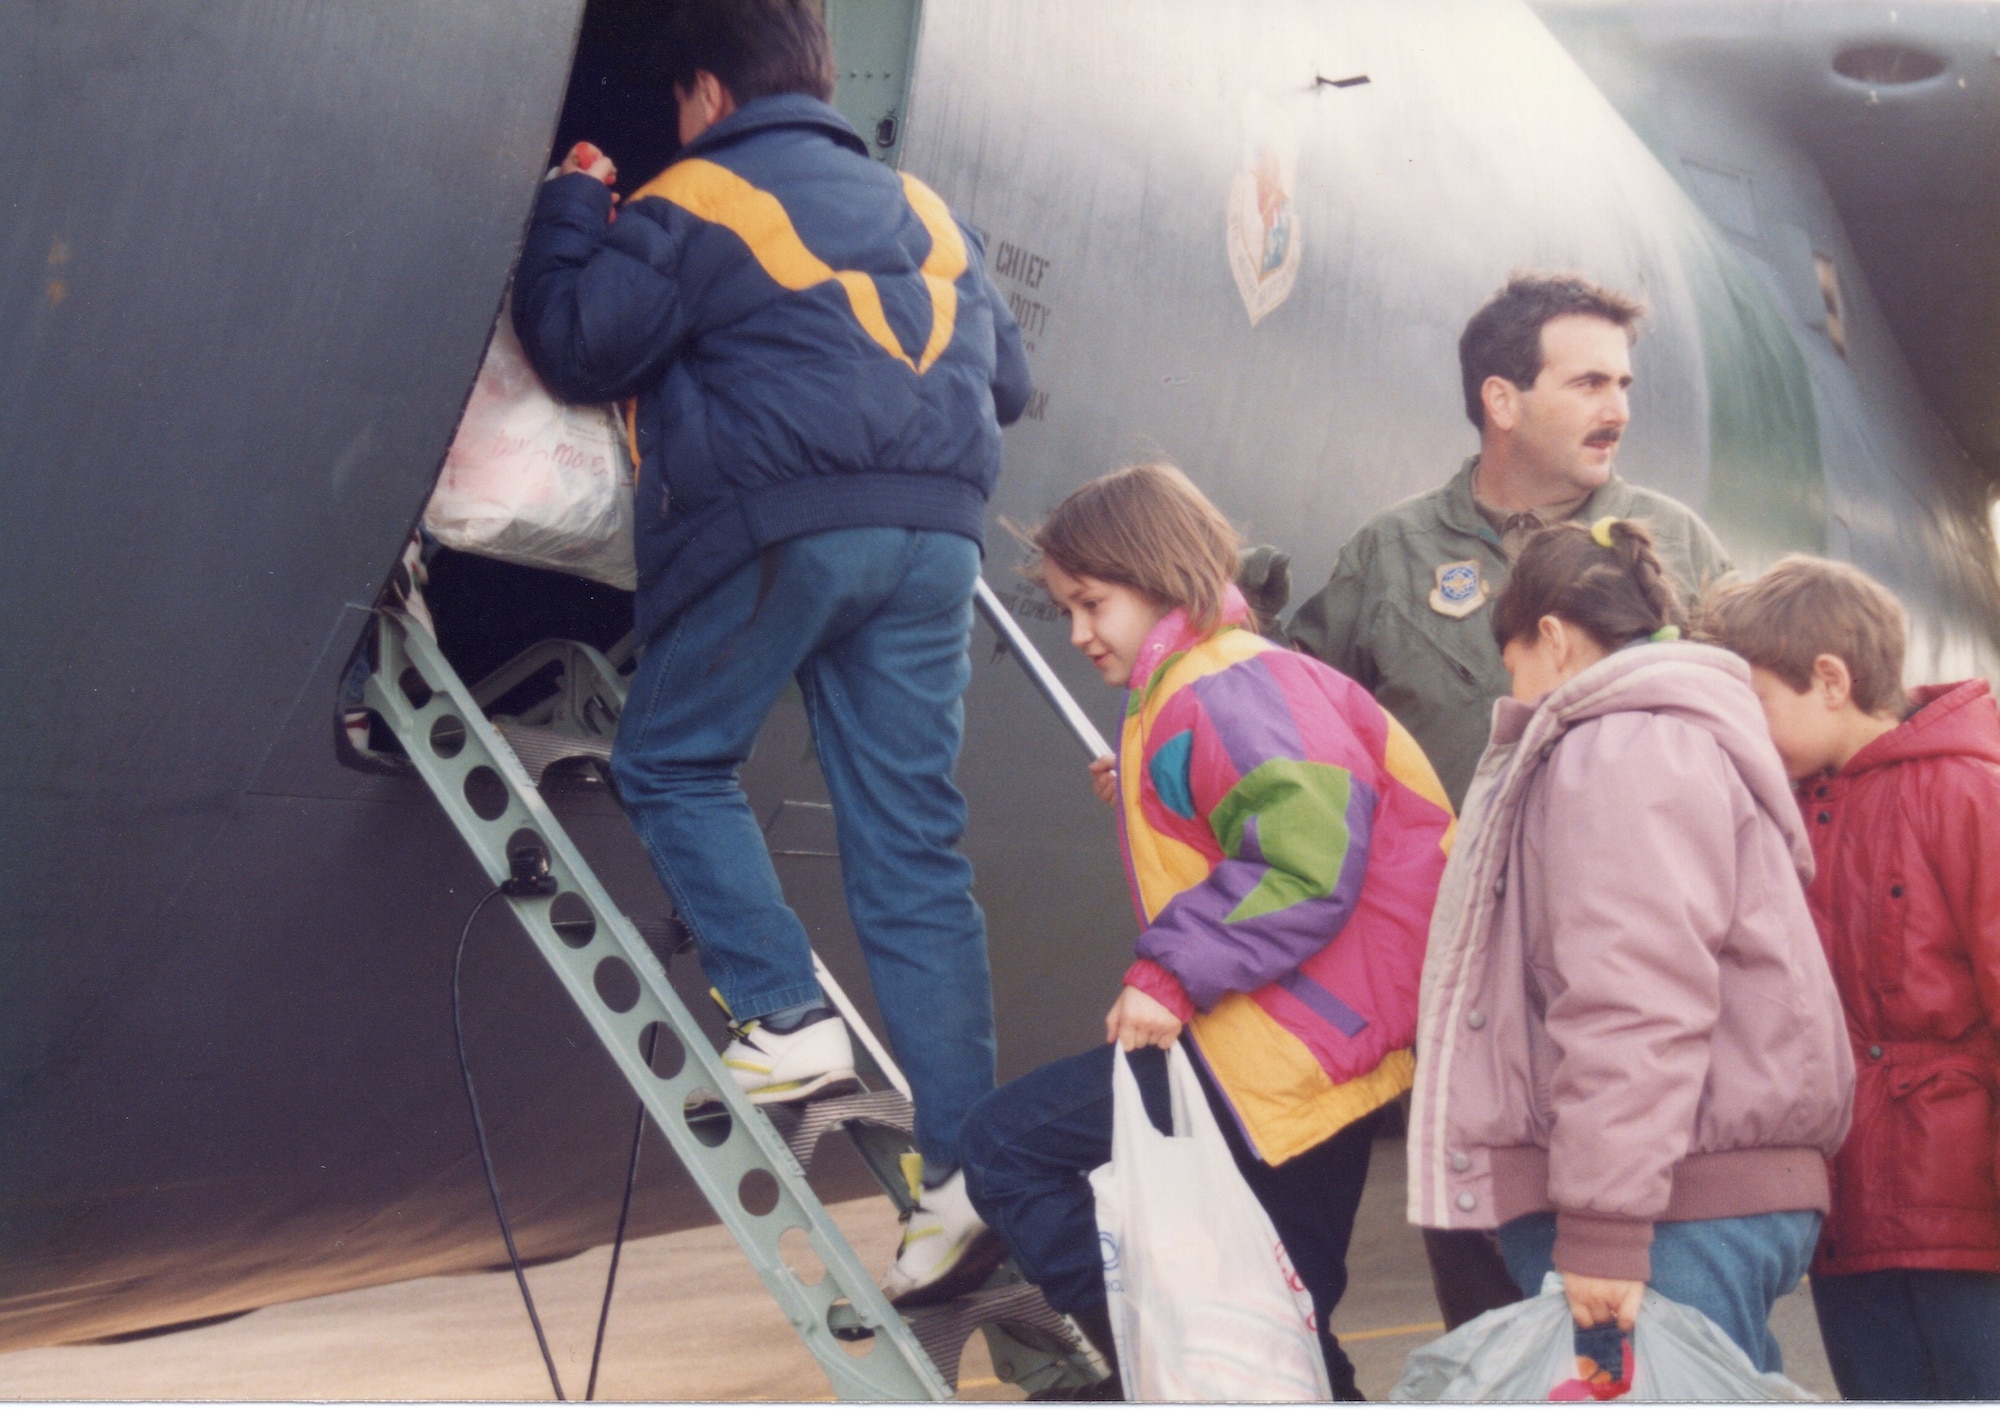 The Ukrainian Children's Airlift of 1992